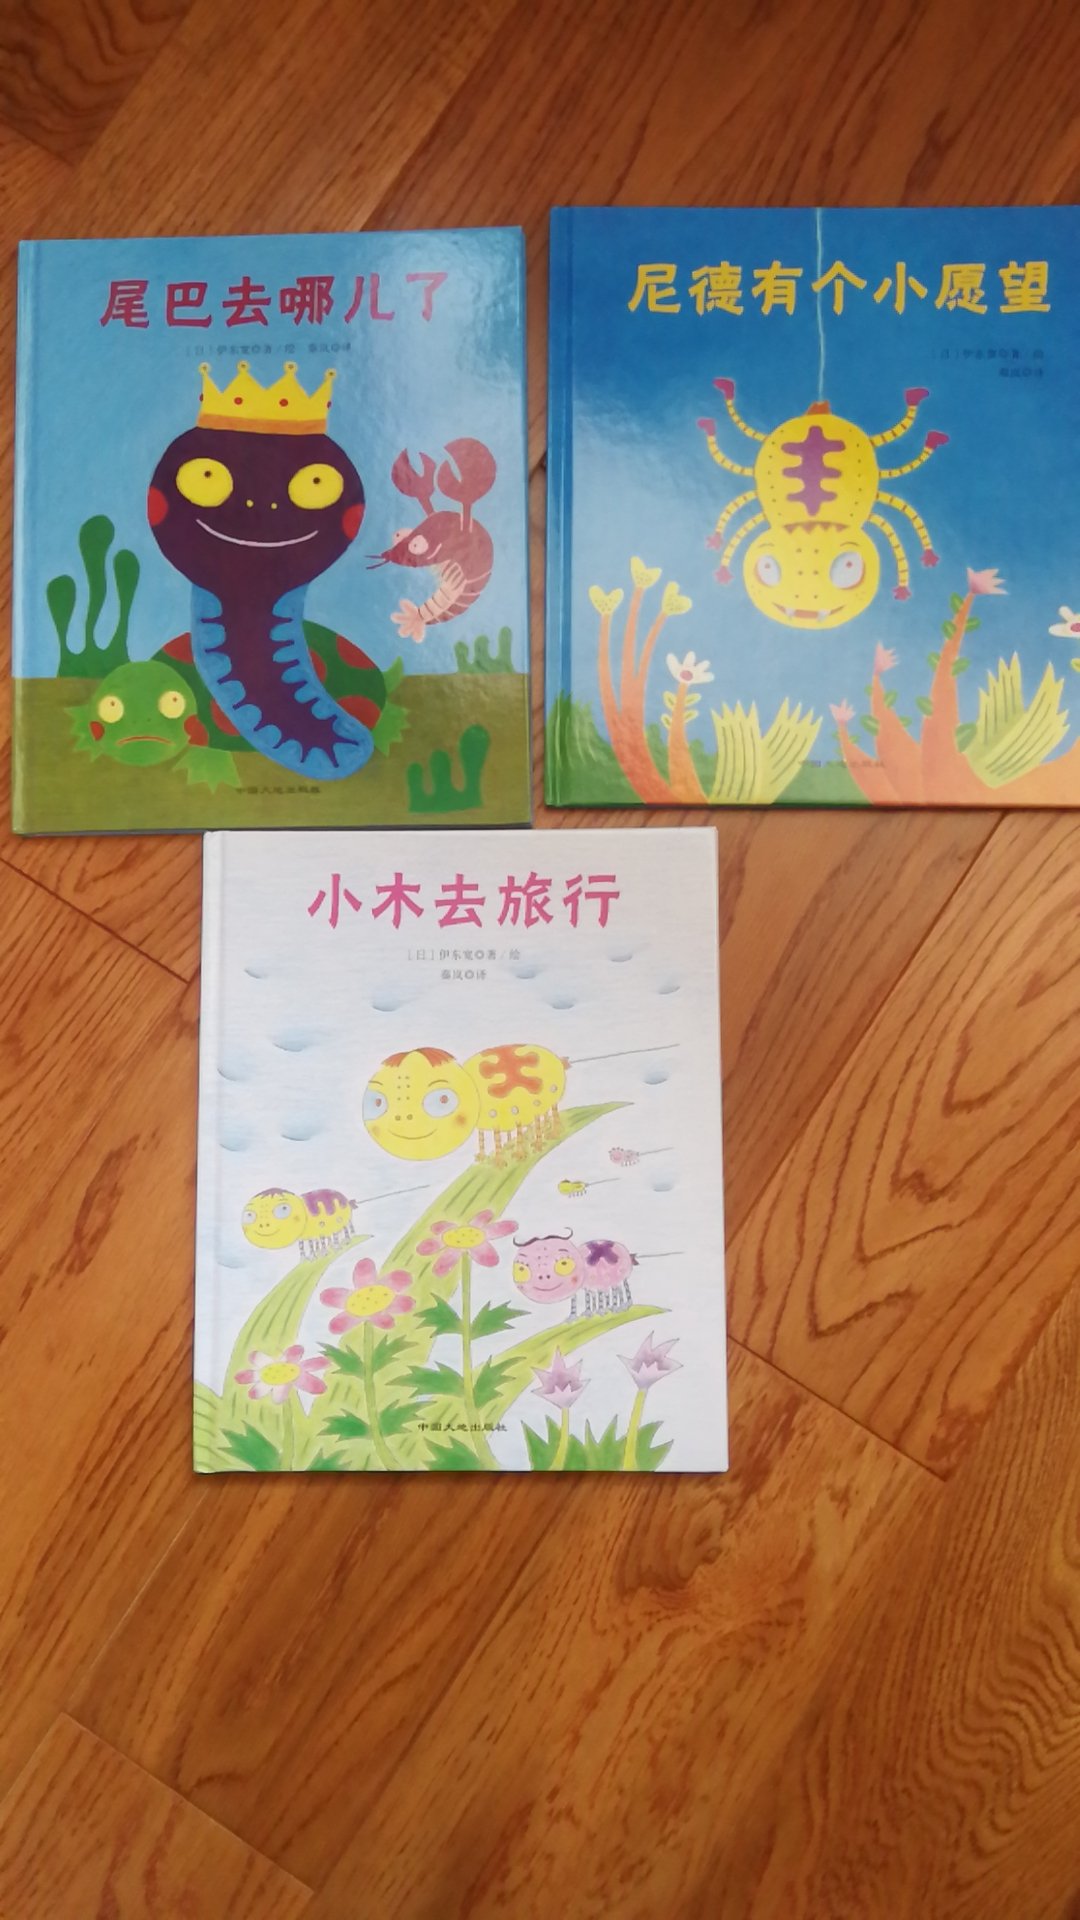 鲁拉鲁先生的作者伊东宽的作品，小蝌蚪小蜘蛛可爱的小故事，让小小的孩子学习勇气成长和智慧。好书